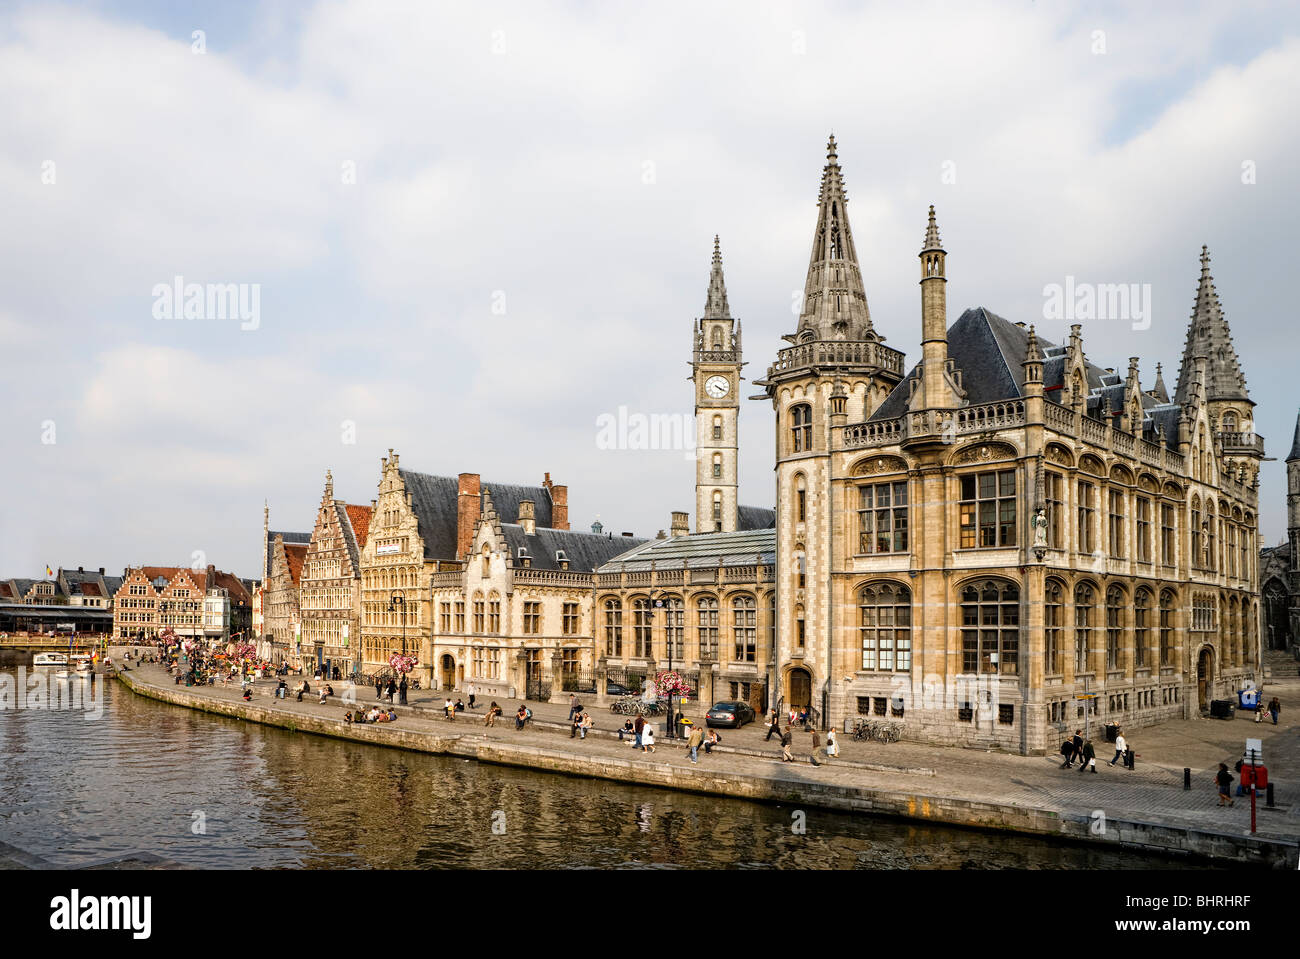 Maisons de guilde avec tour de l'horloge à l'Graslei quayside à Gand, Flandre, Belgique, Europe Banque D'Images